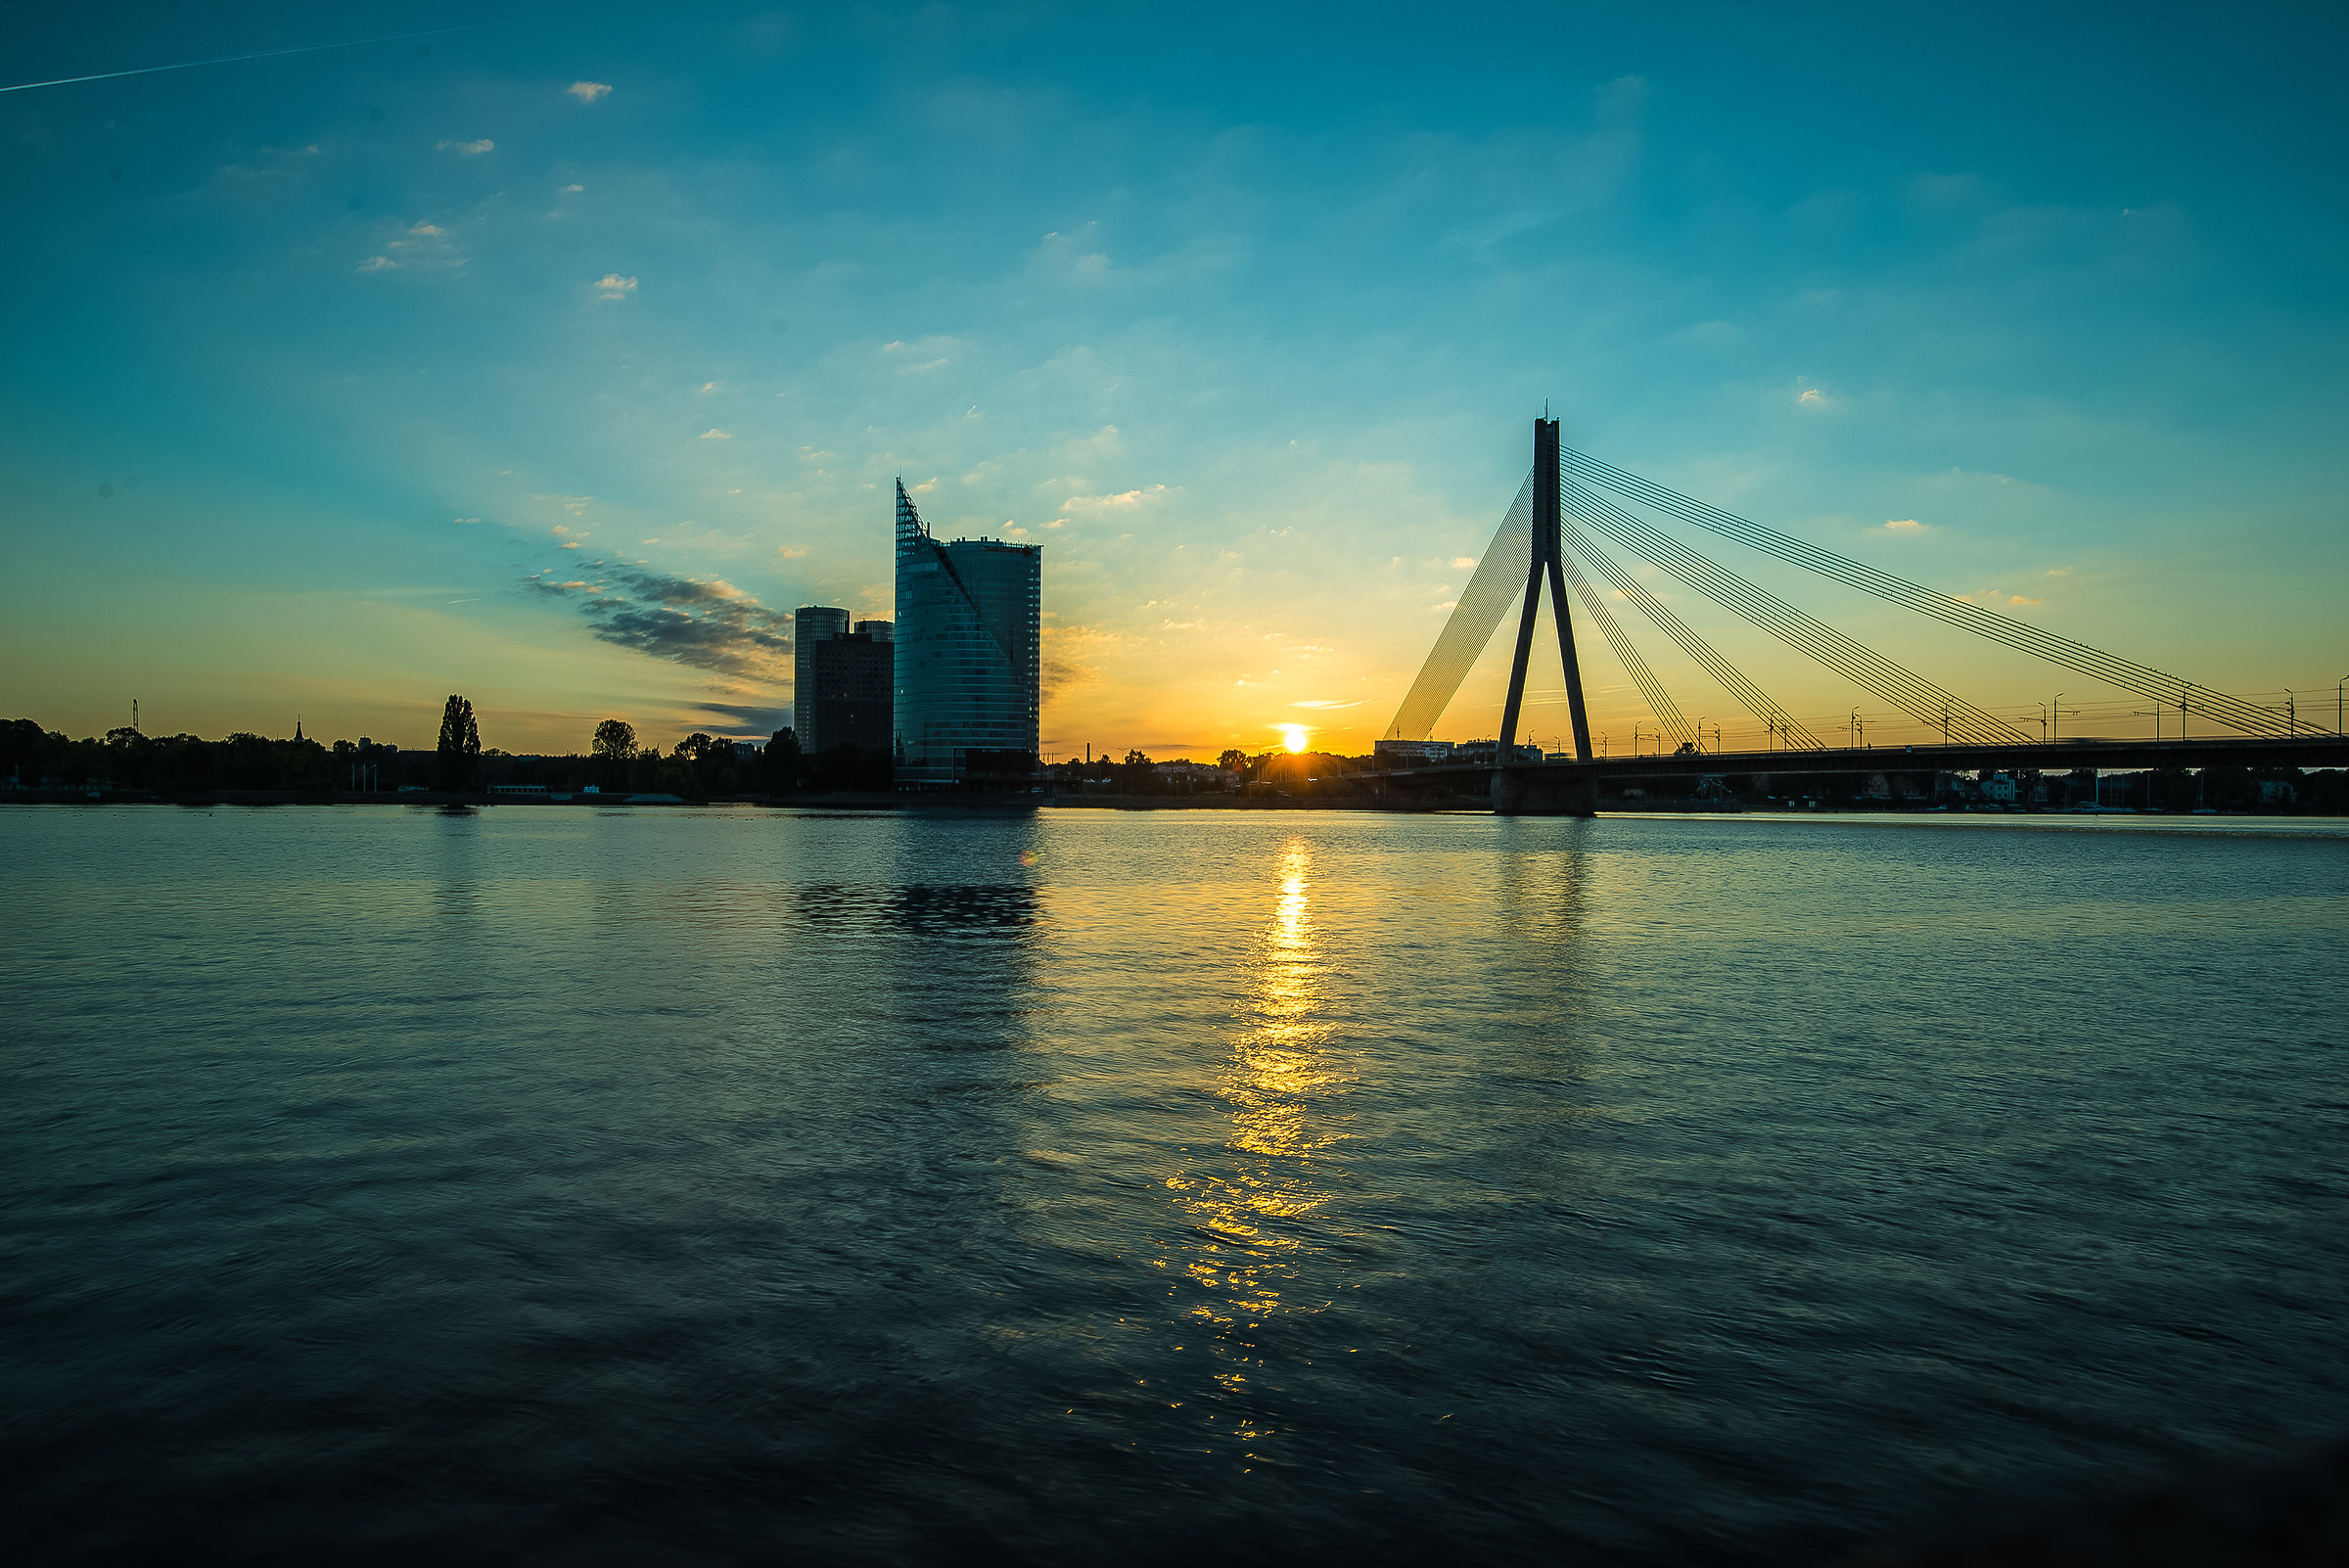 River daugava - Riga...